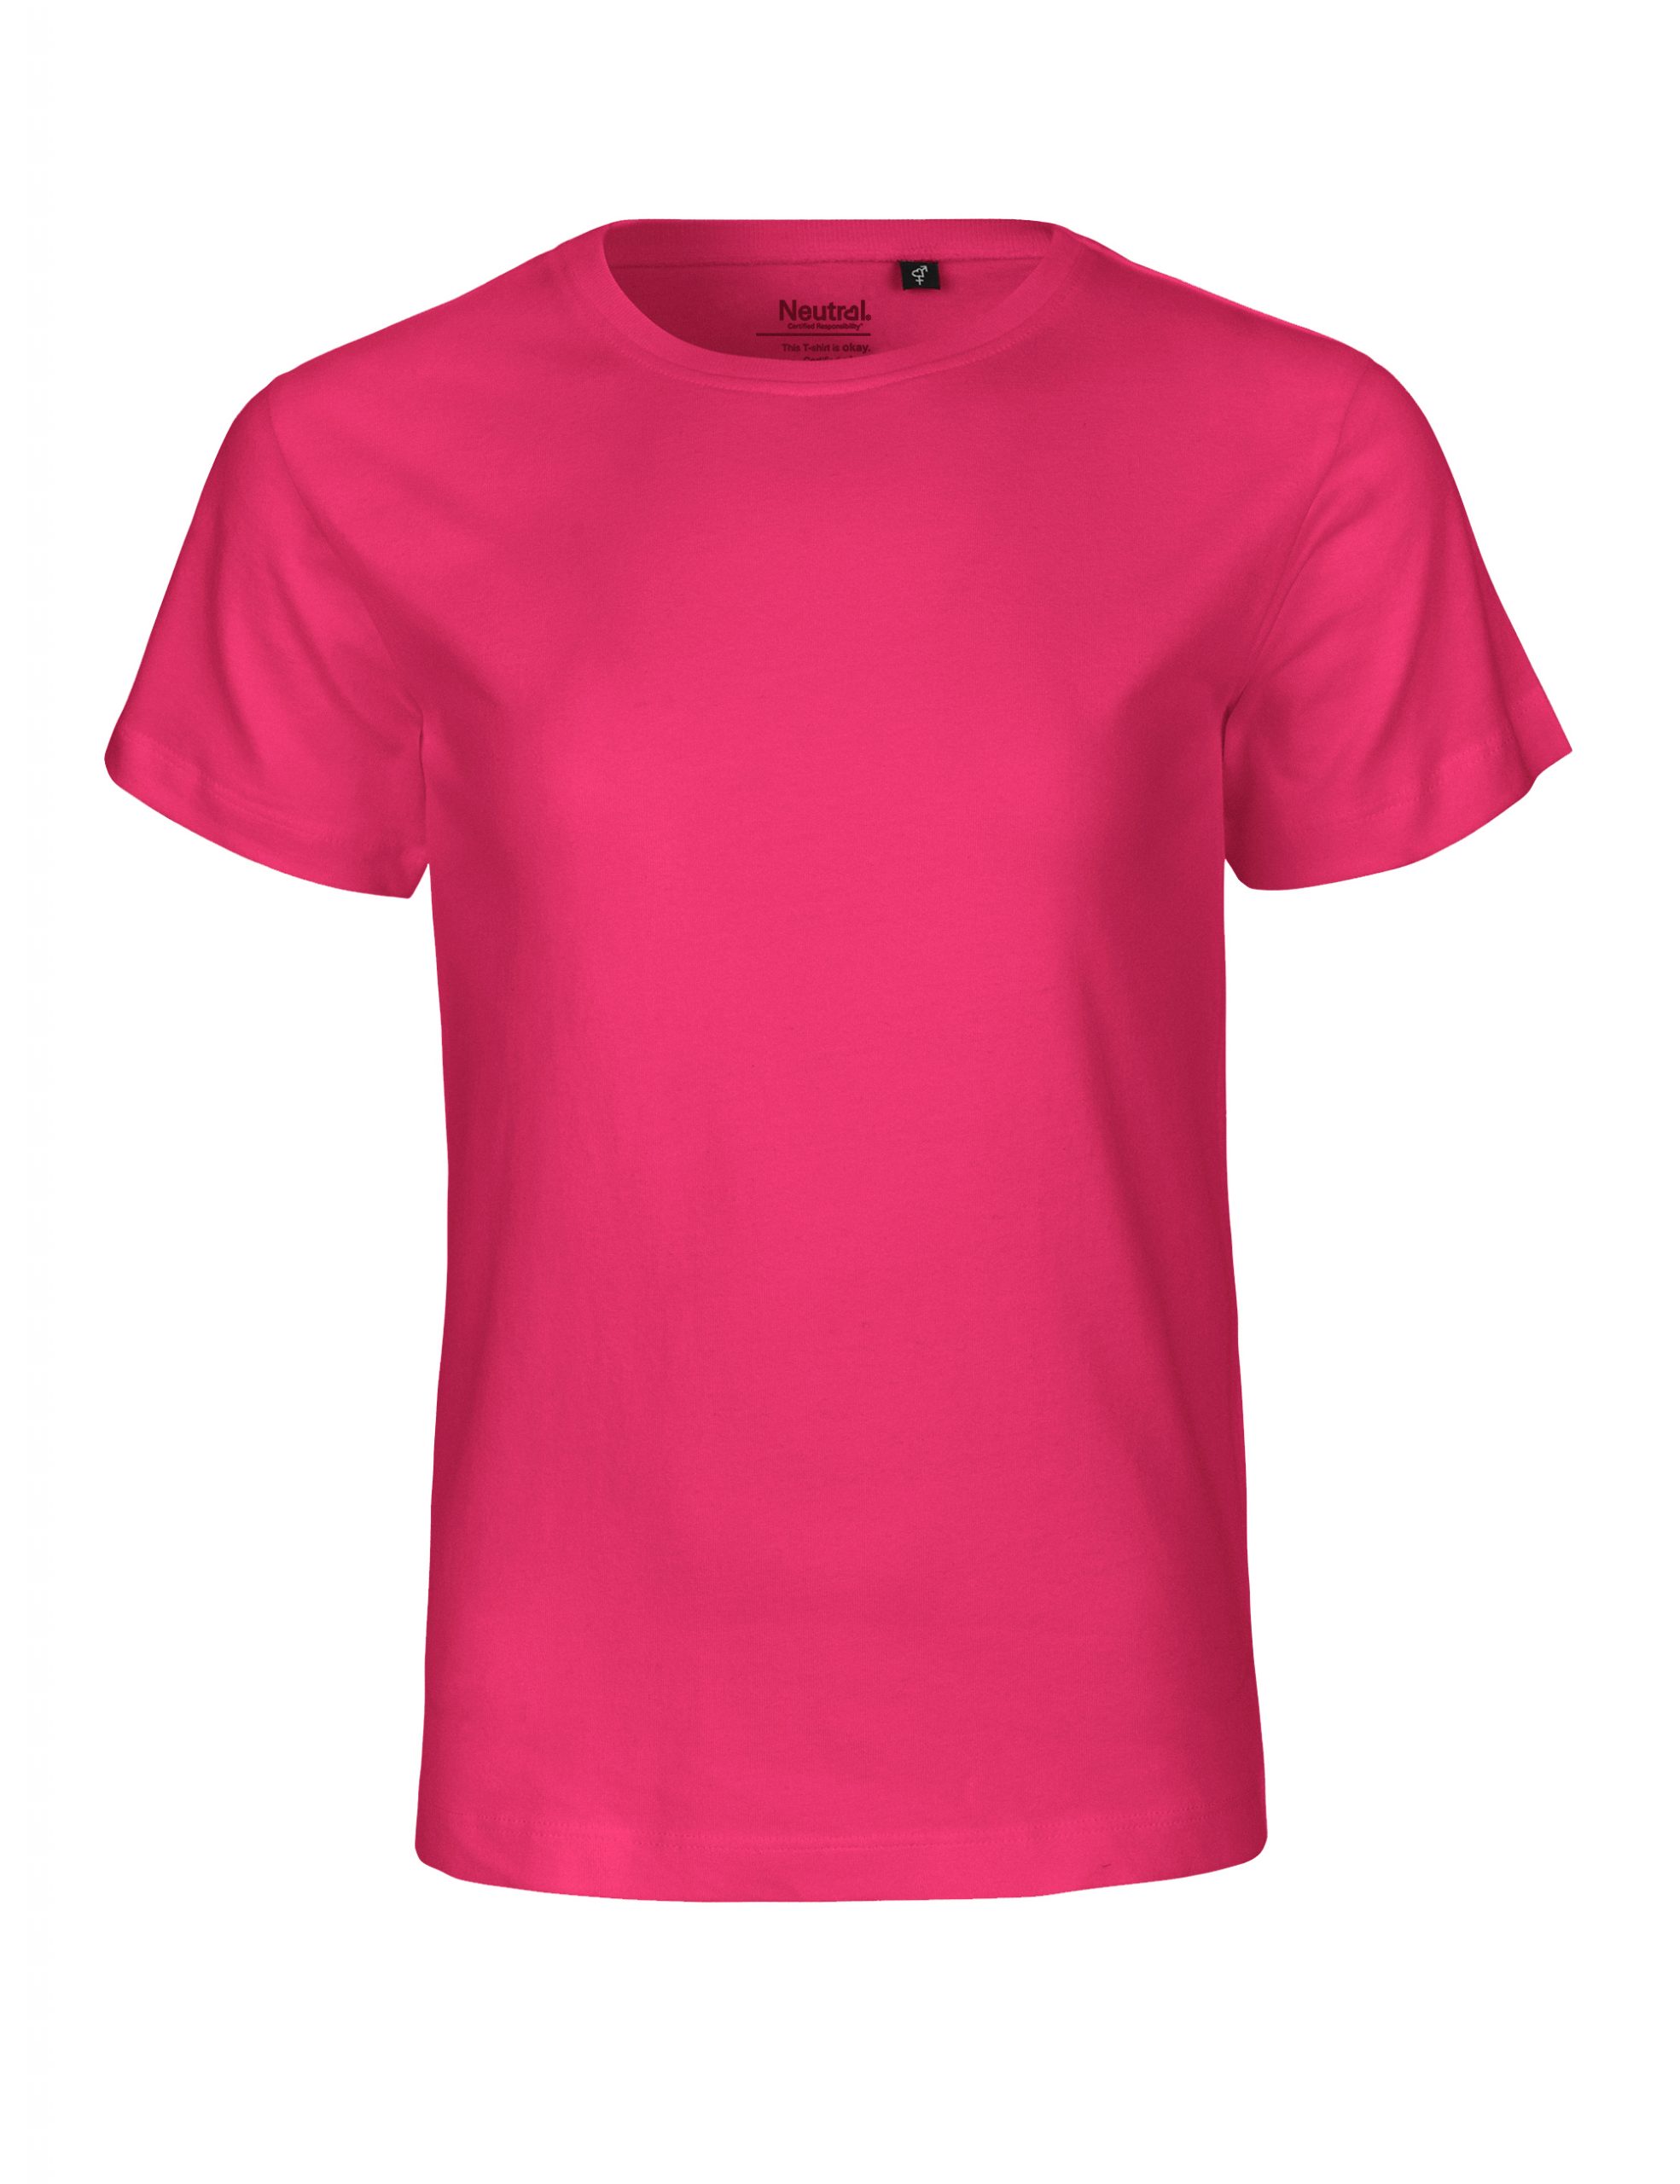 Neutral Kids T-shirt Pink